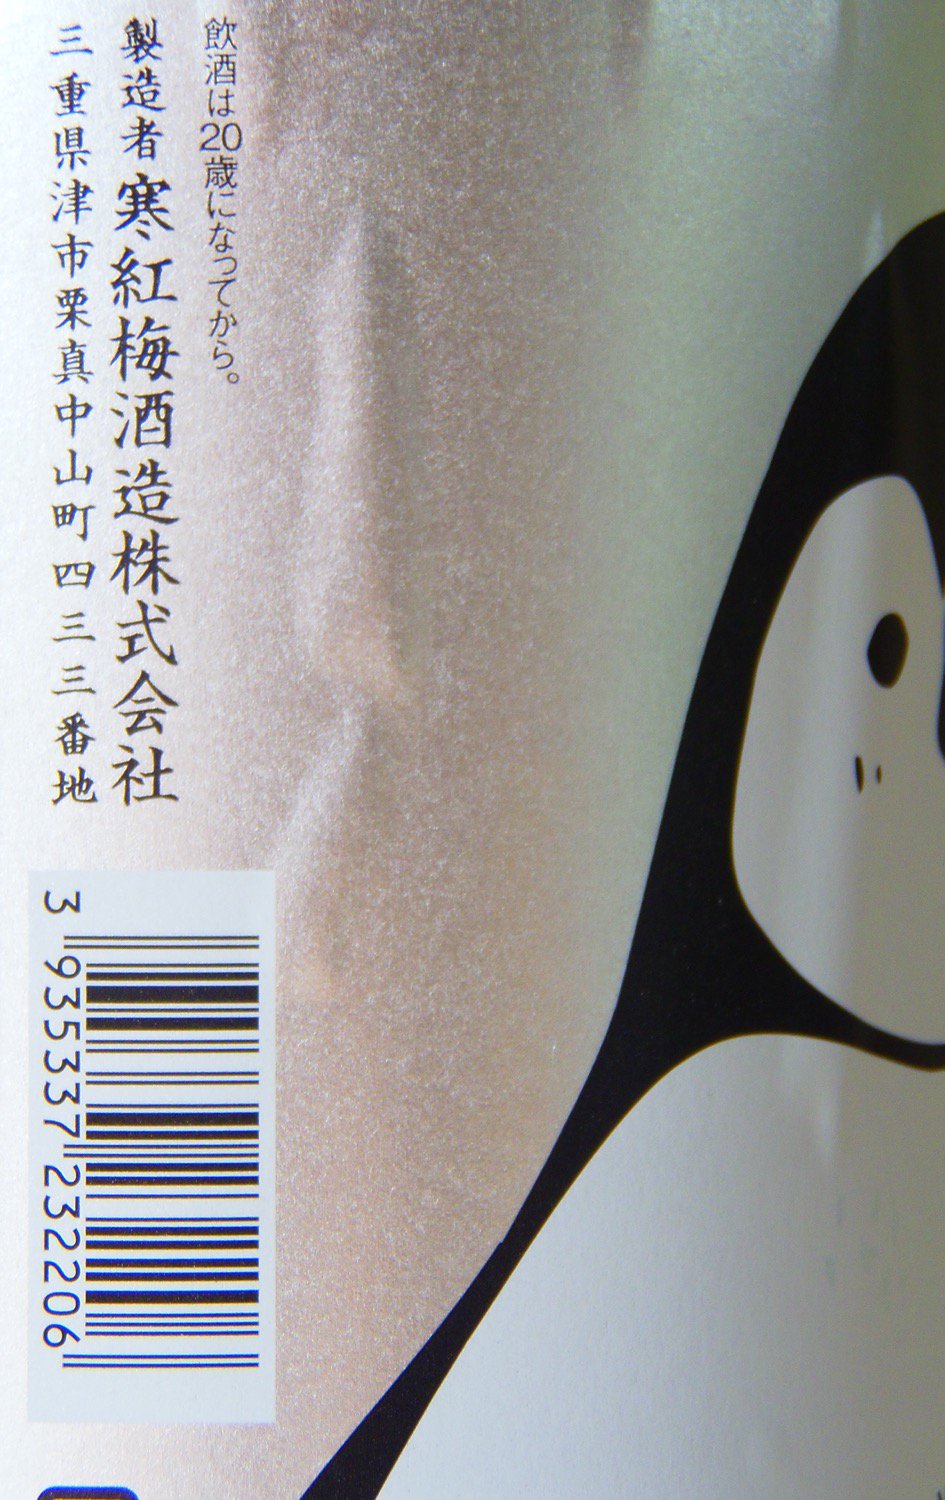 寒紅梅 純米吟醸 NATSU ペンギンラベル 1800ml